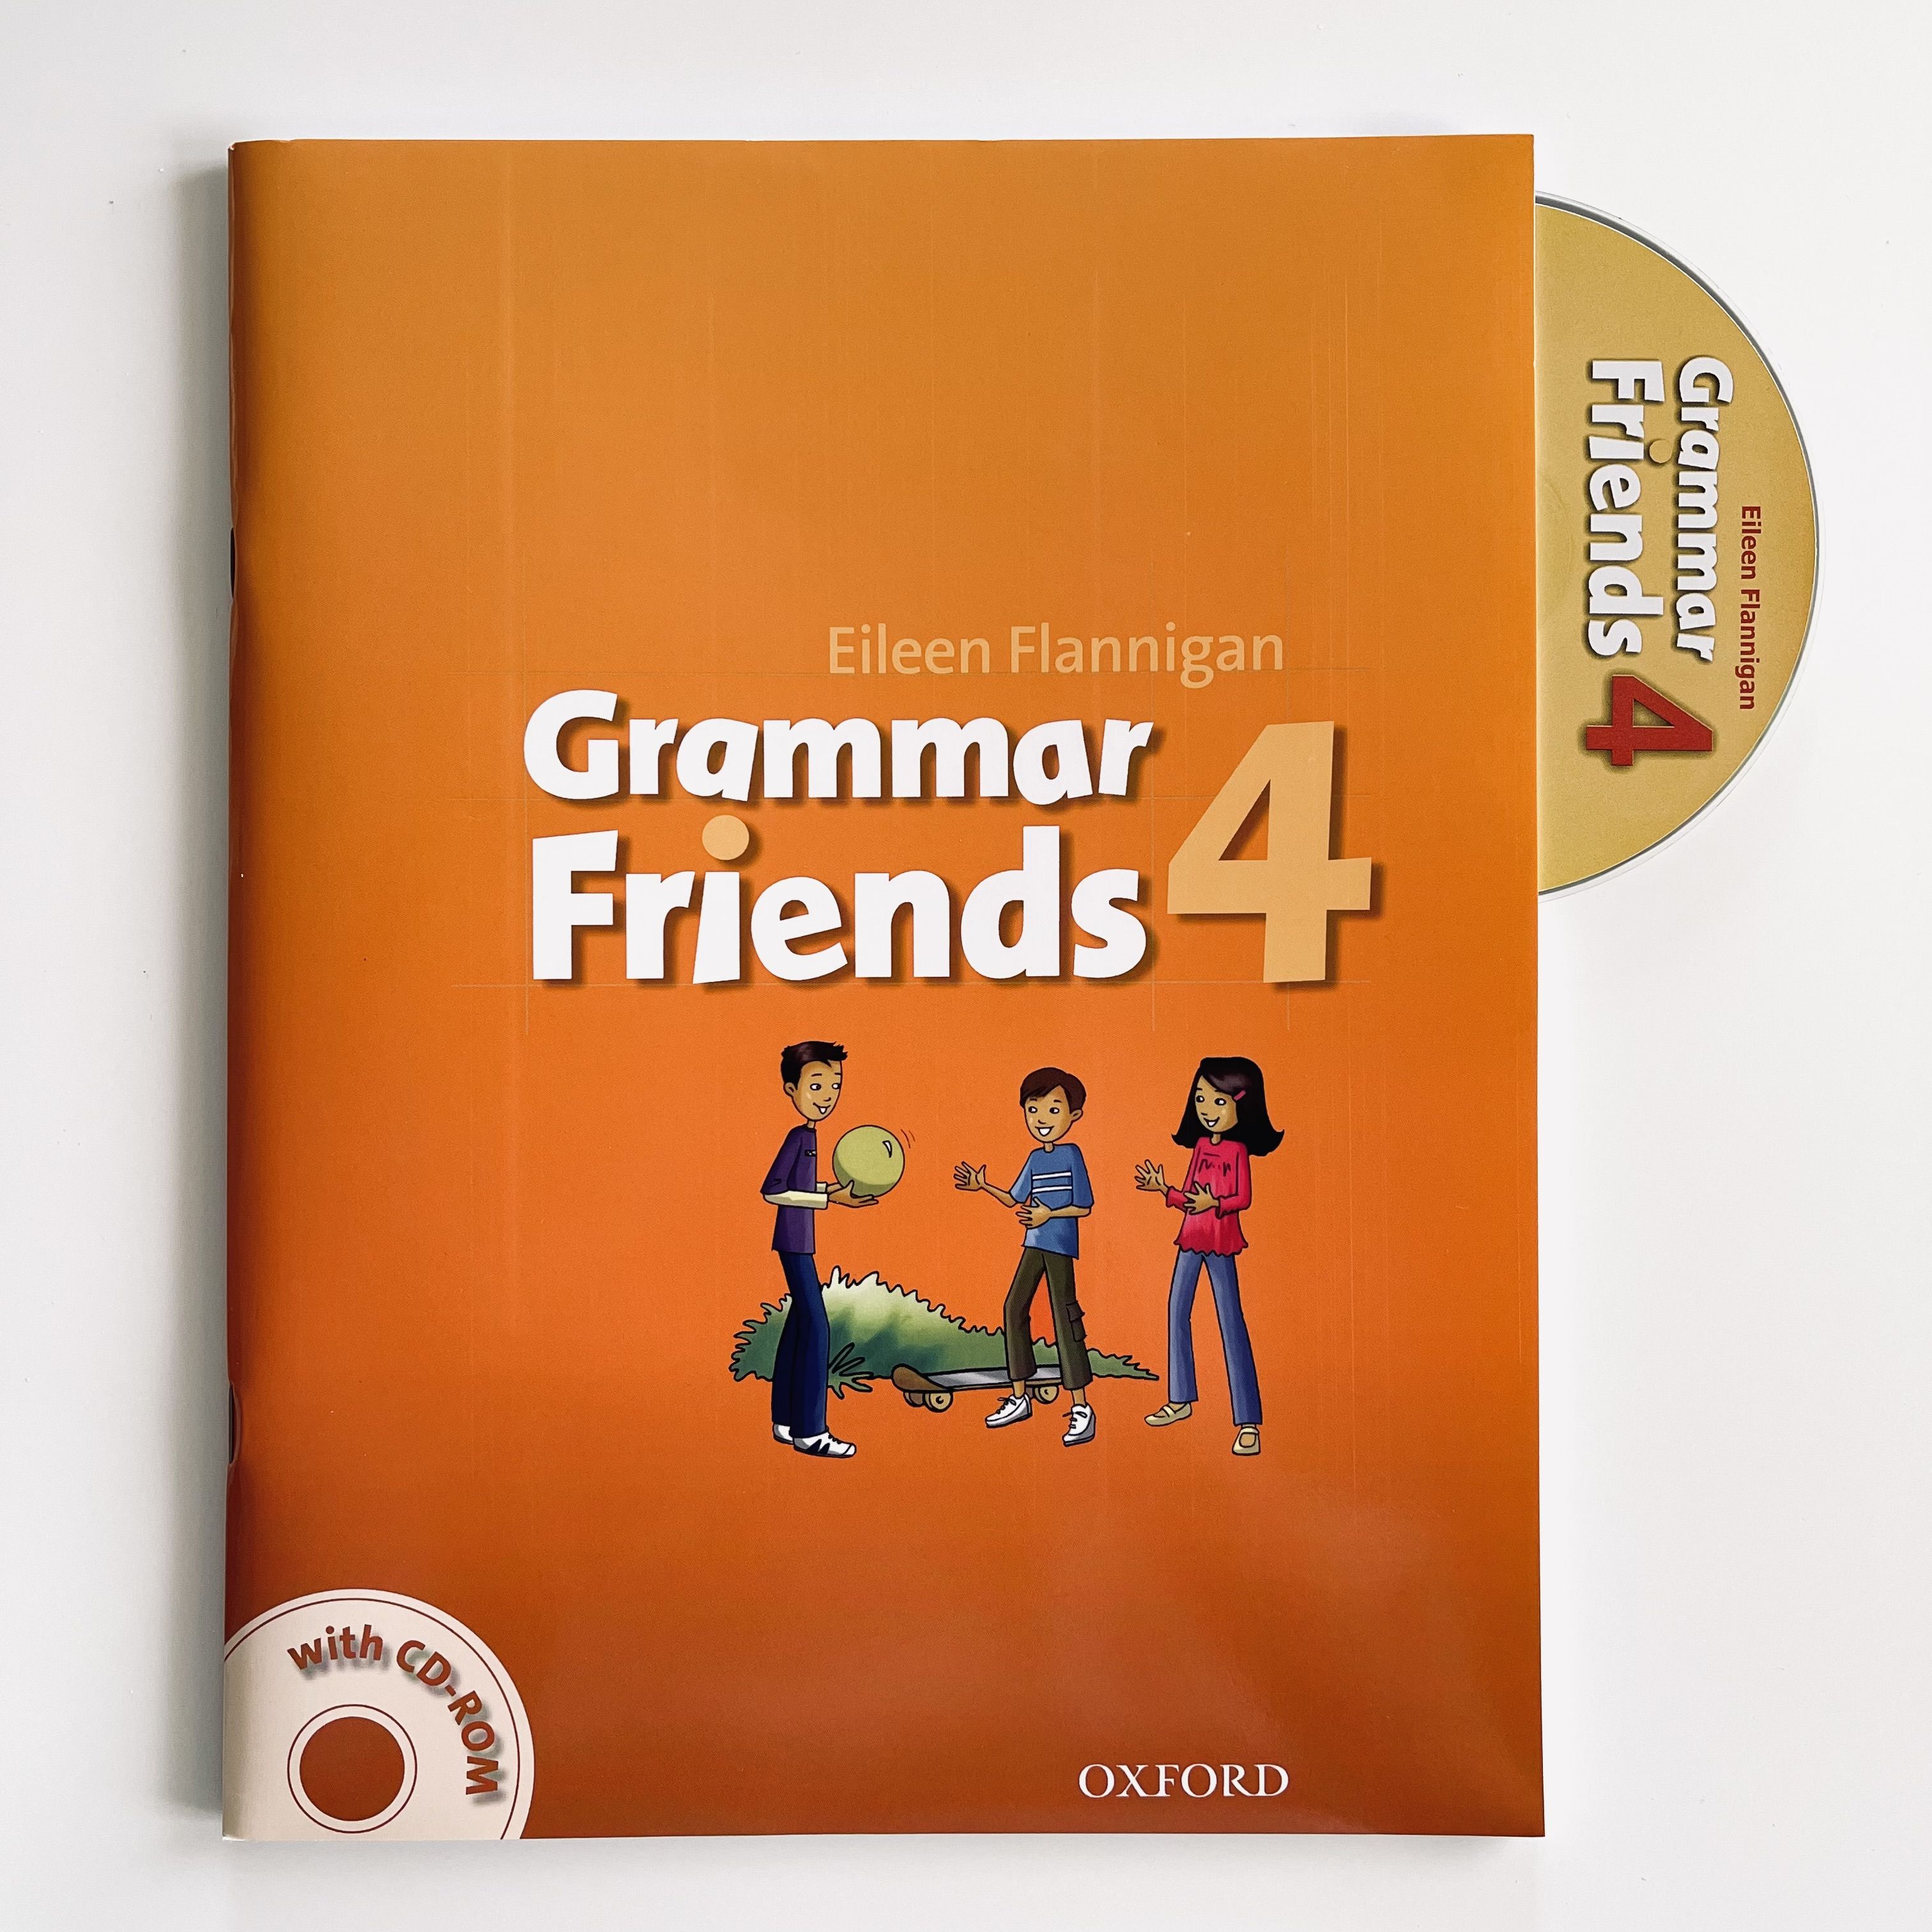 My grammar friends. Grammar friends. Grammar friends 1. Grammar friends 2. Grammar friends 4.